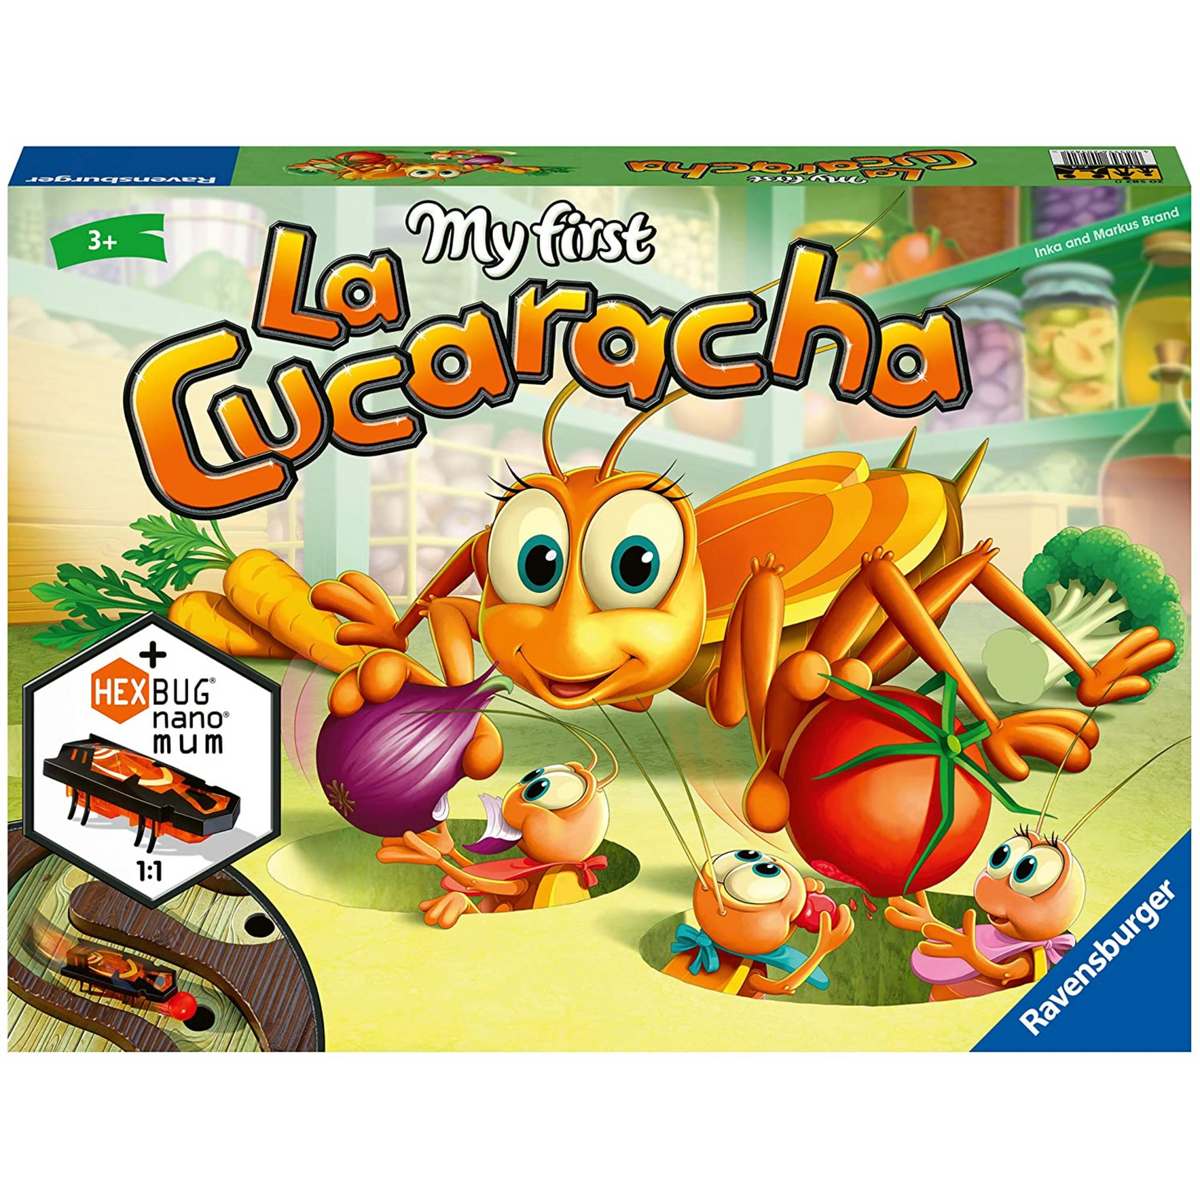 Juego de mesa - La Cucaracha